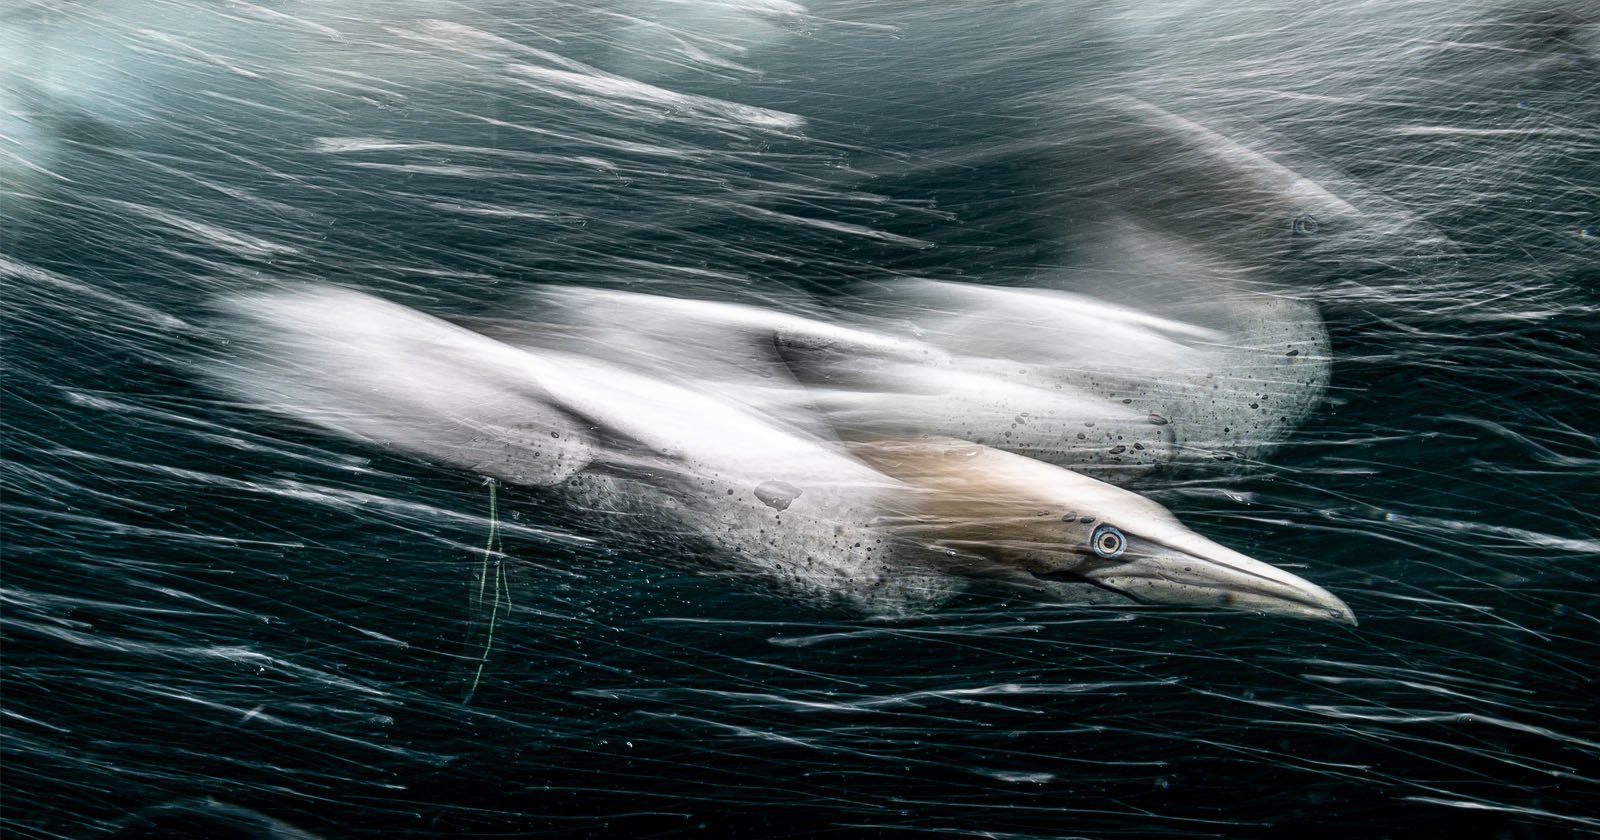  photo diving gannet wins 120 000 world 